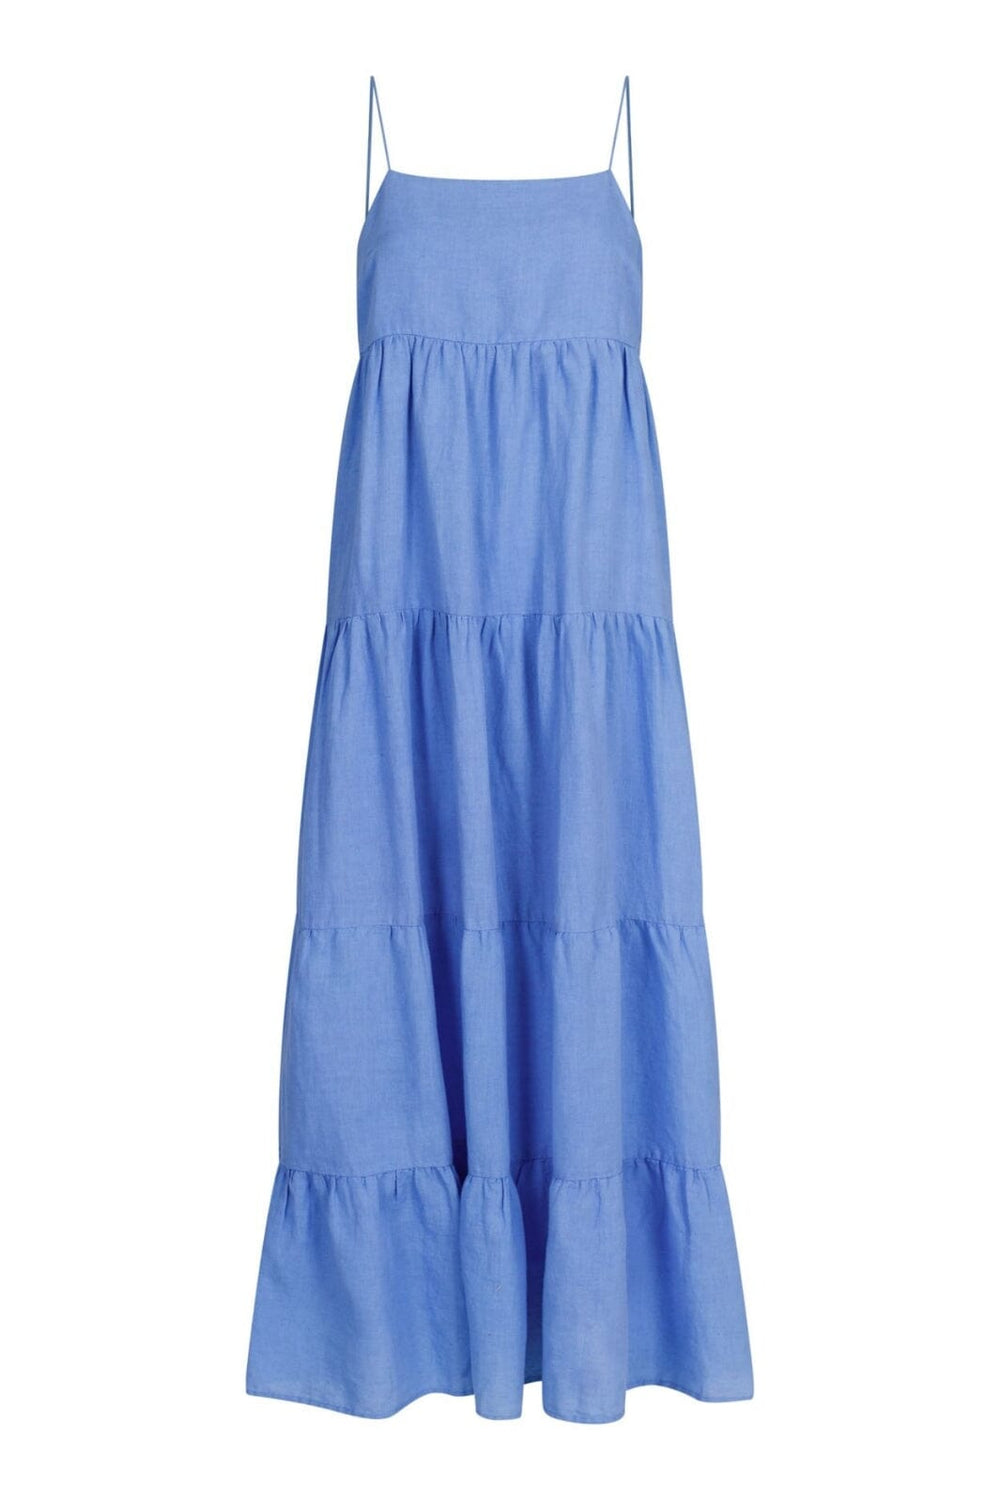 Neo Noir - Haily Linen Dress - Dusty Blue Kjoler 